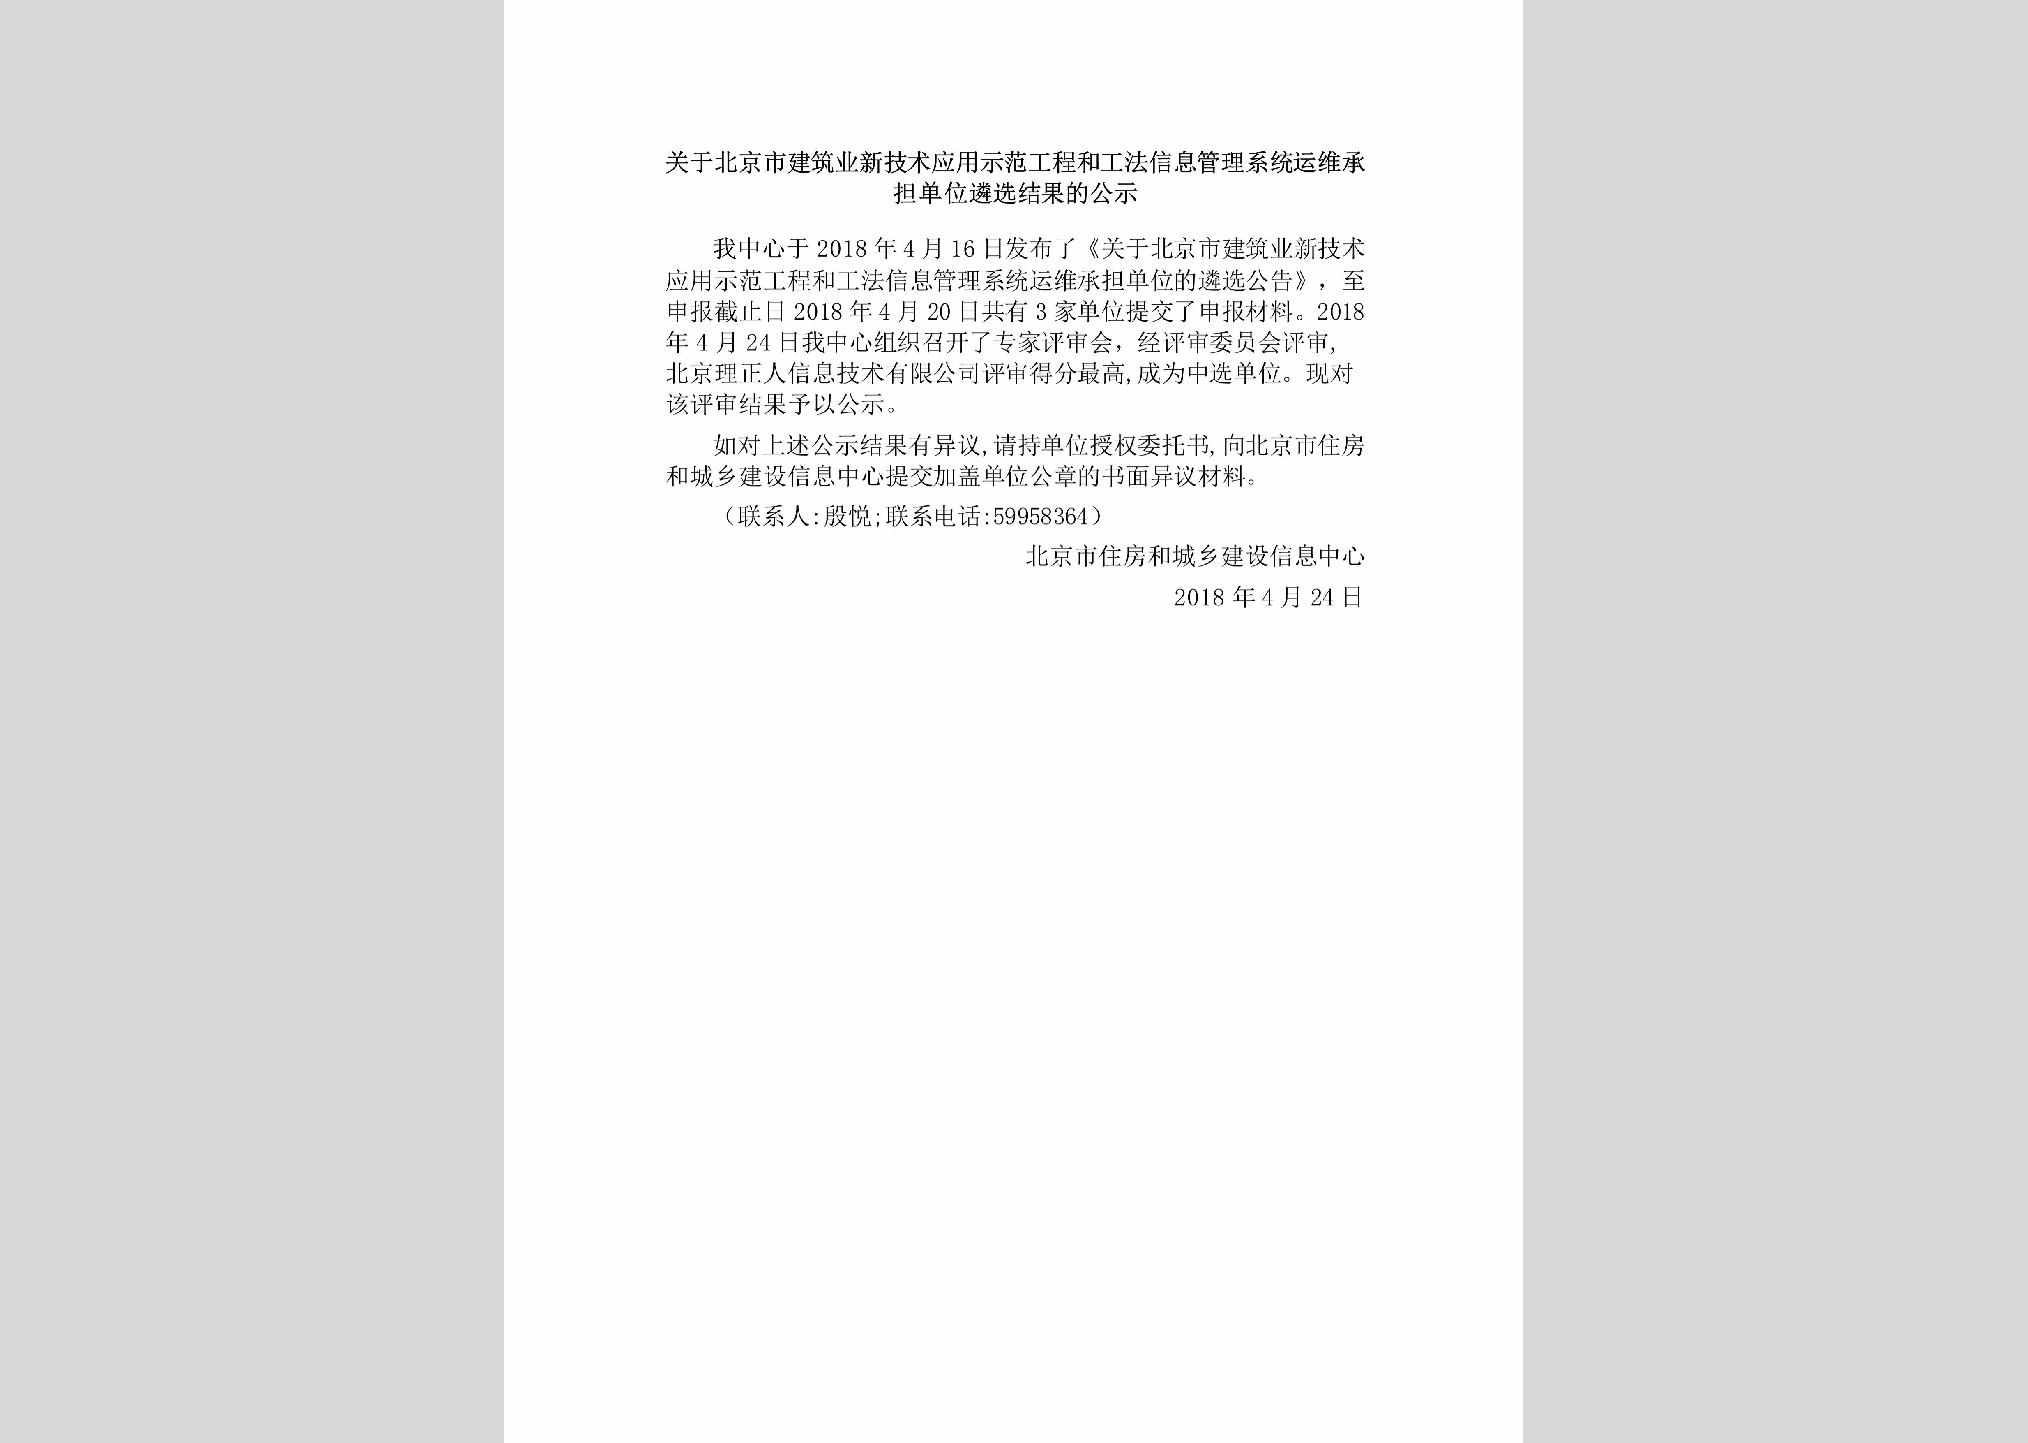 BJ-JSYYLXJG-2018：关于北京市建筑业新技术应用示范工程和工法信息管理系统运维承担单位遴选结果的公示